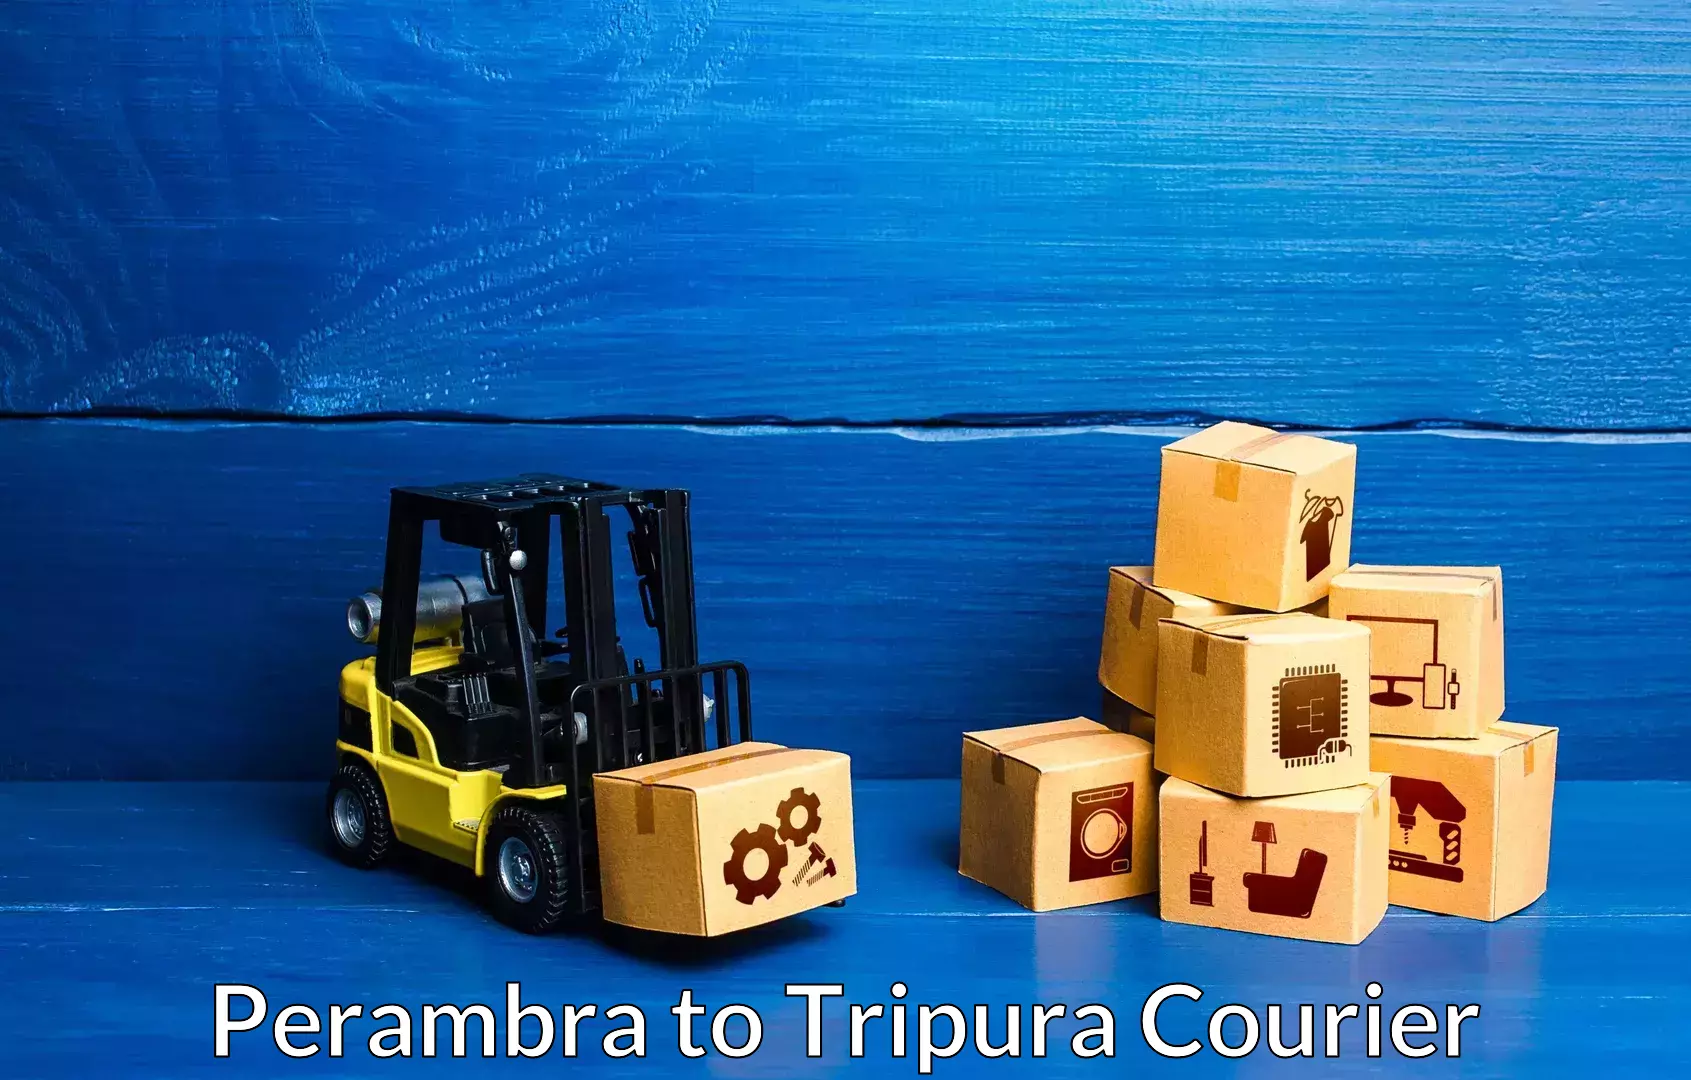 Premium furniture transport Perambra to Tripura